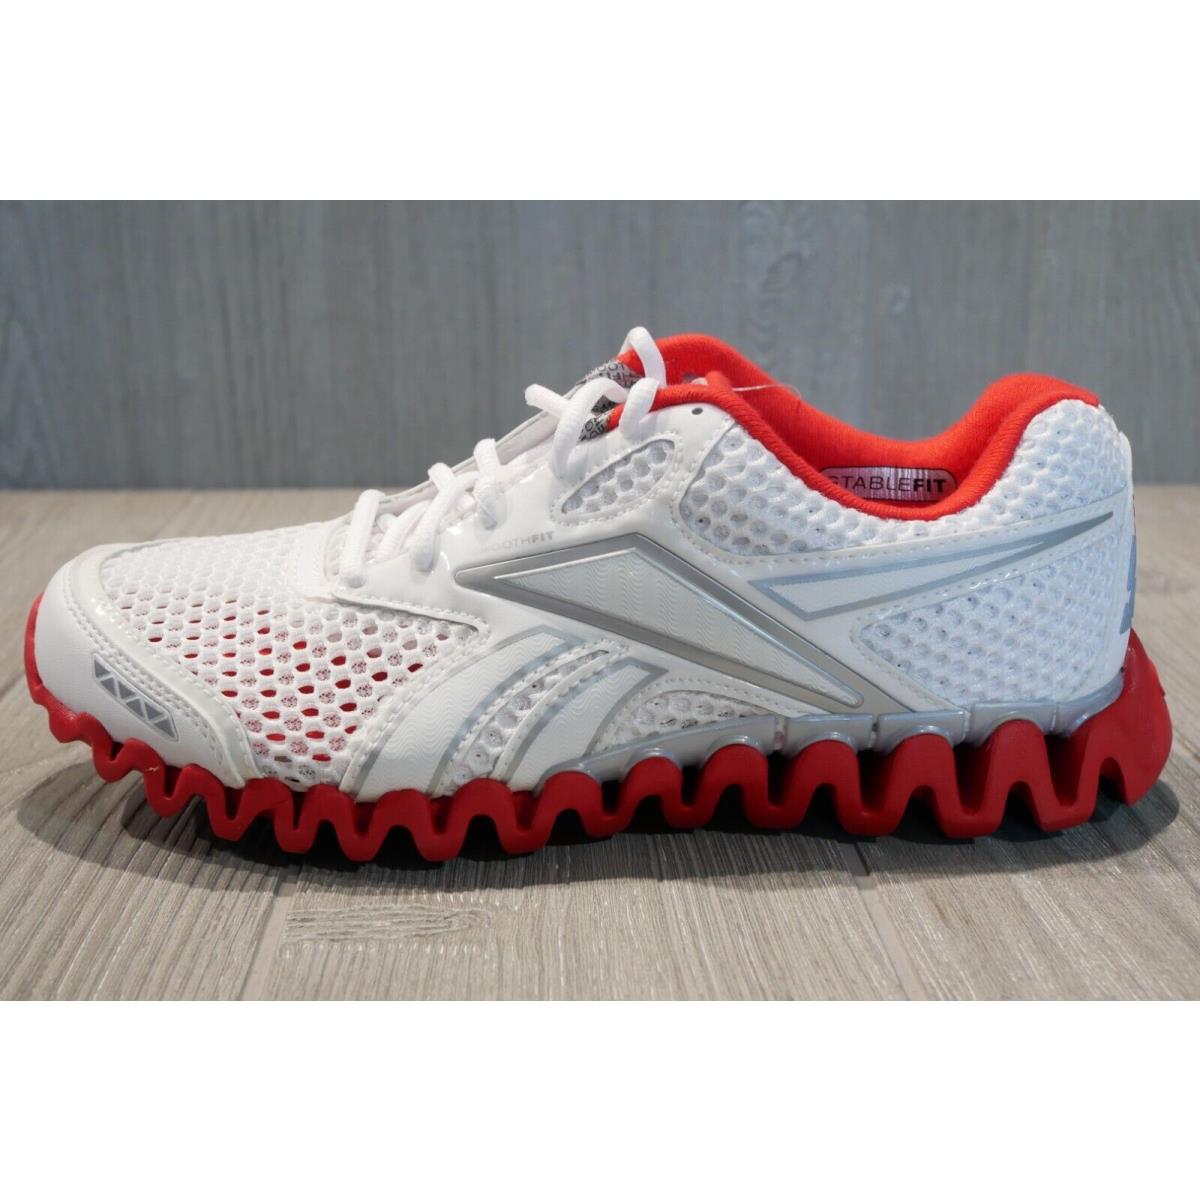 Reebok Premier Zigfly Zignano Running Shoes Womens` Sz 8 2011 Oss